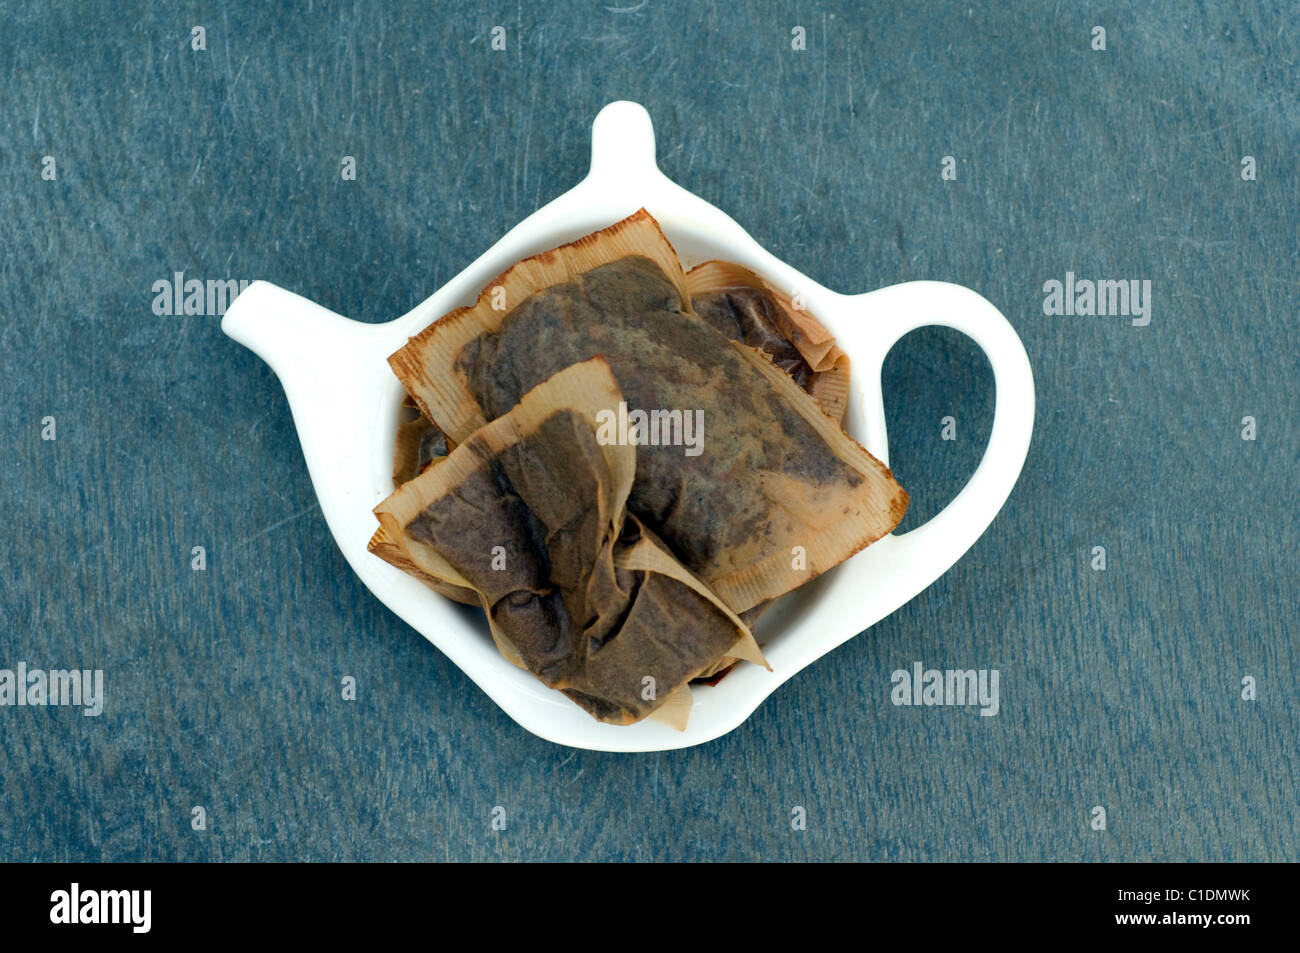 English Breakfast Teebeutel in eine Teekanne geformt Tropf Recepticle verwendet. Stockfoto